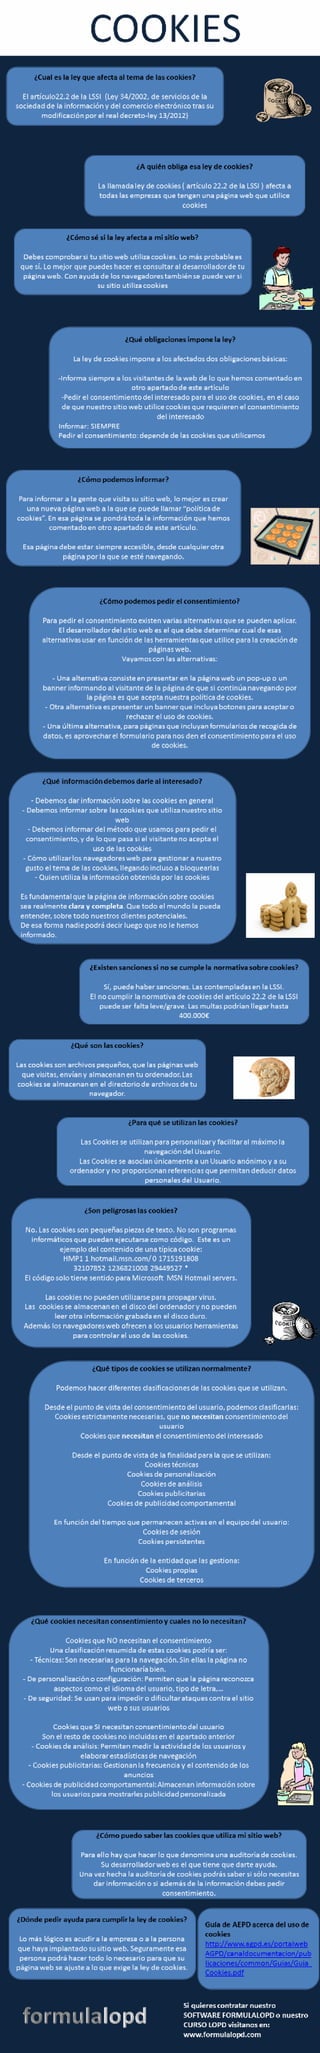 Infografico lssi-ley-de-cookies